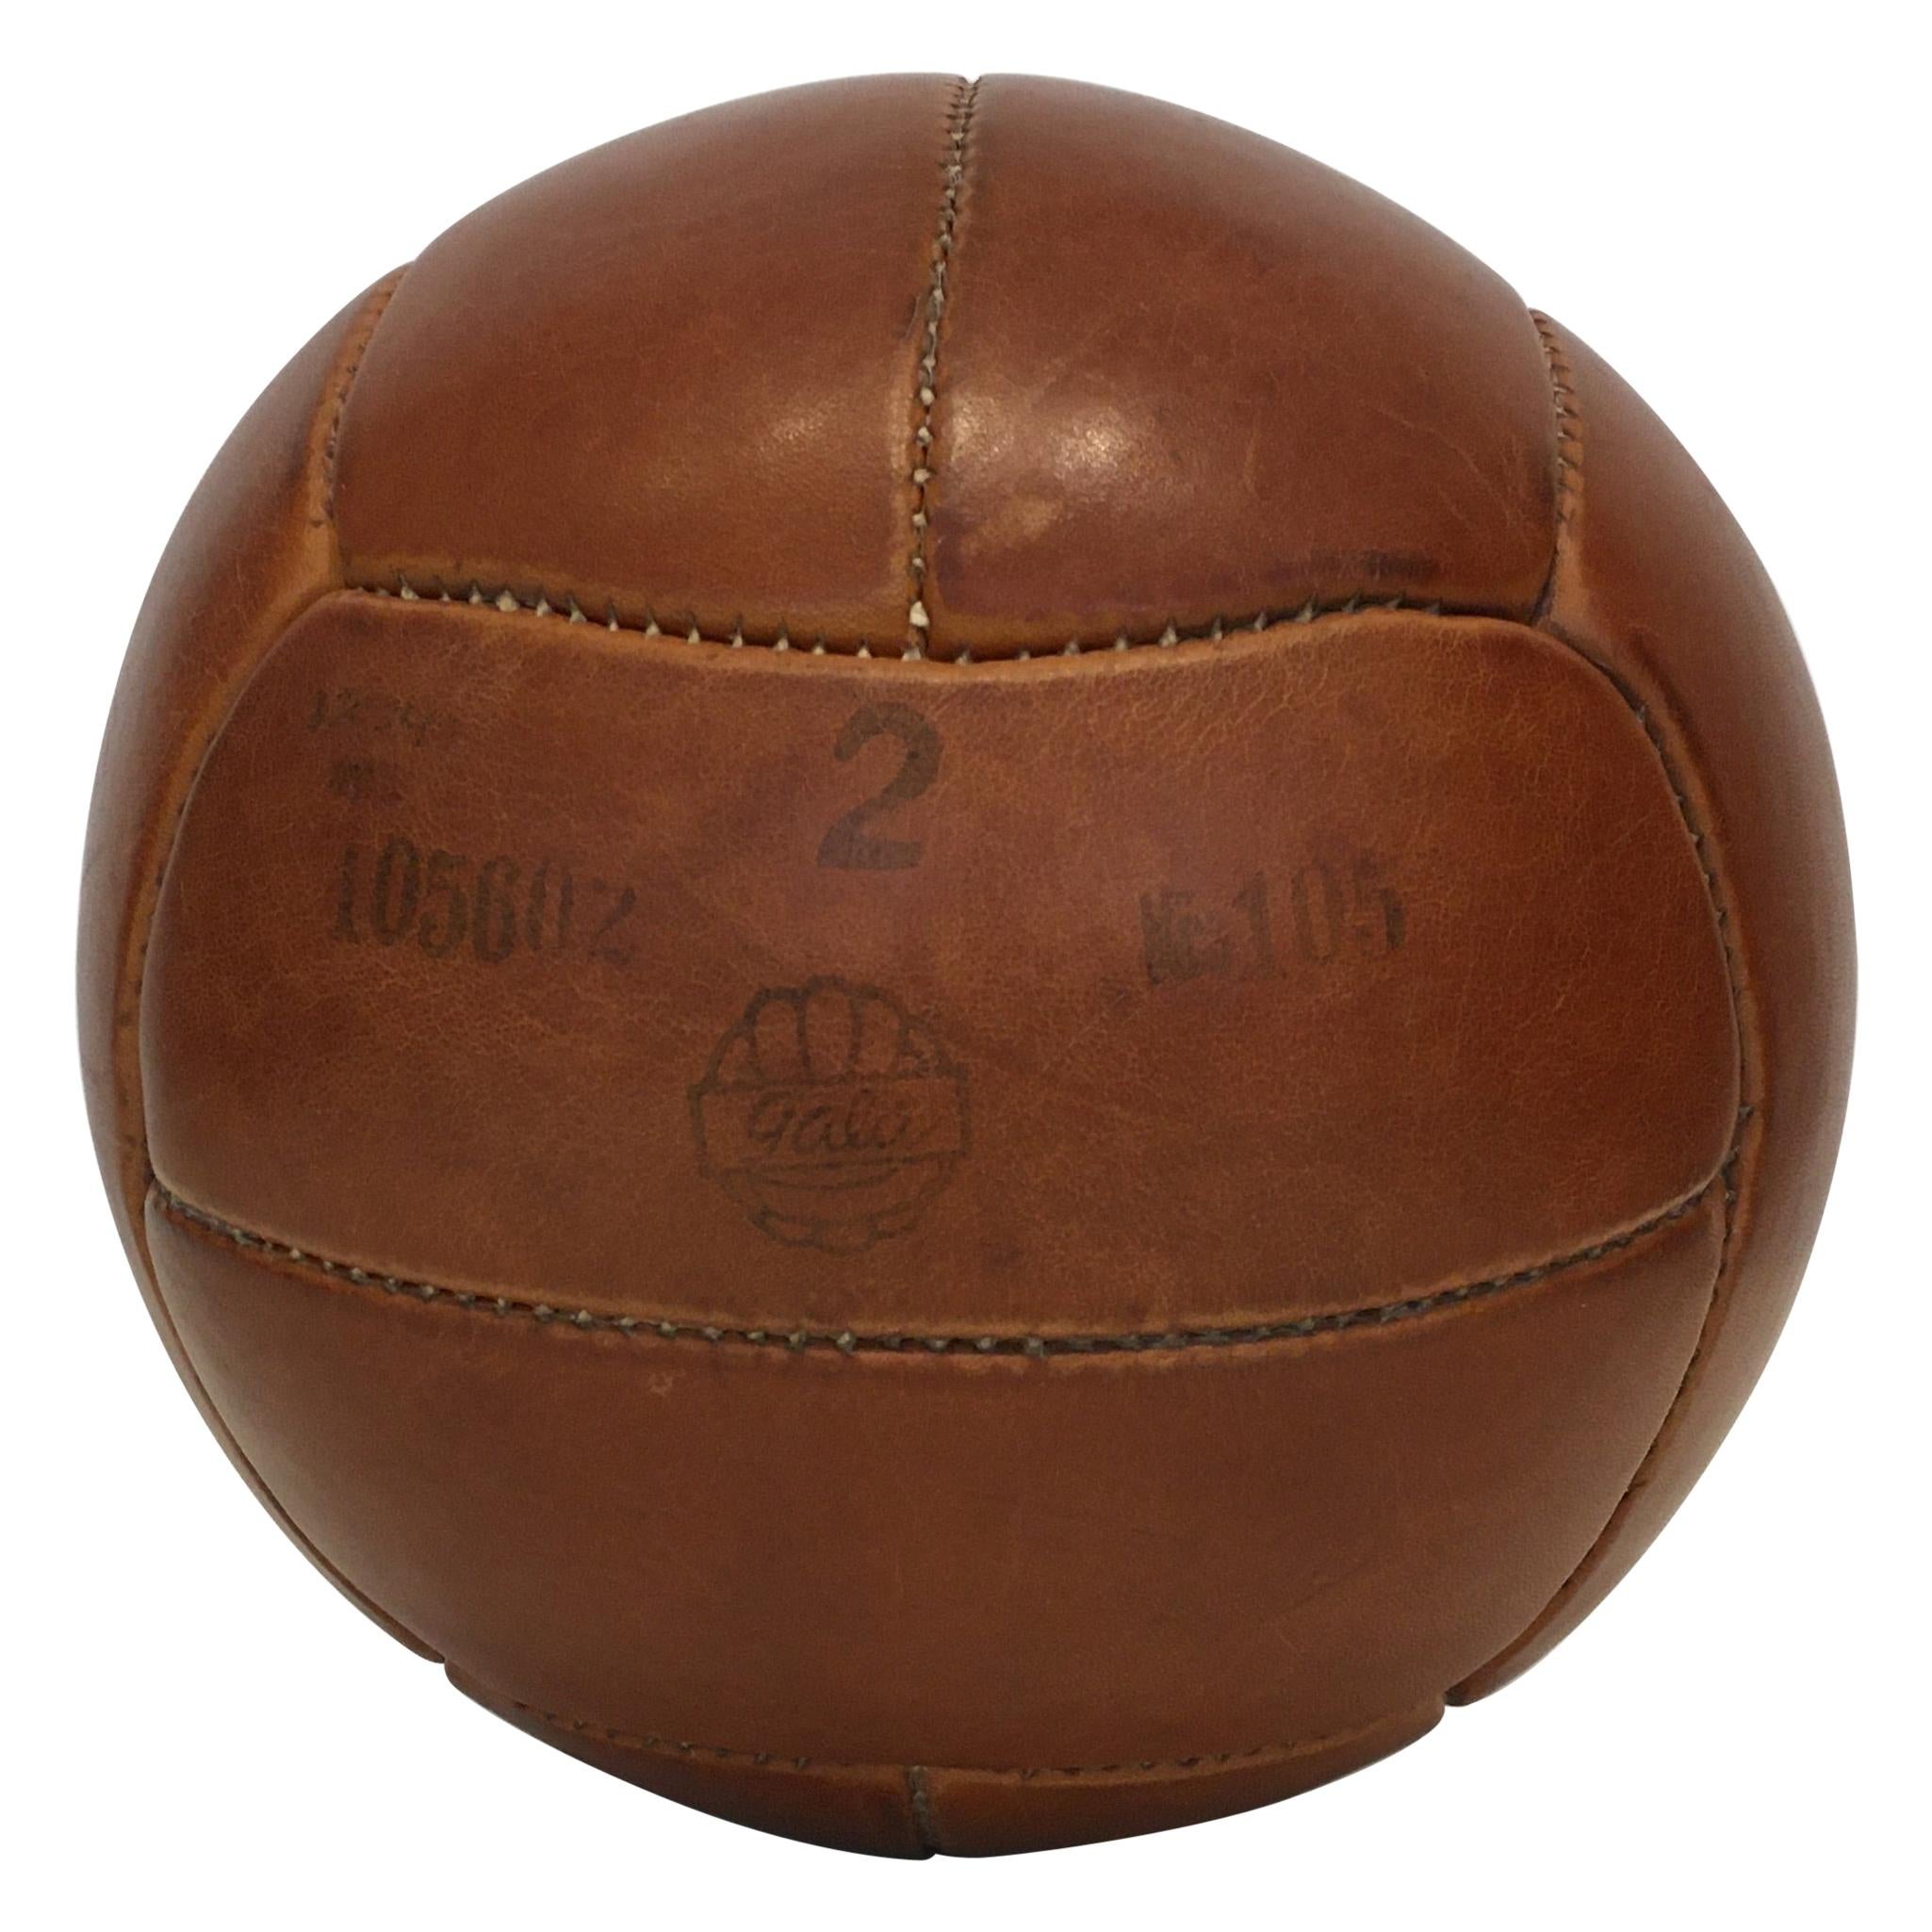 Vintage Brown Leather Medicine Ball, 2kg, 1930s